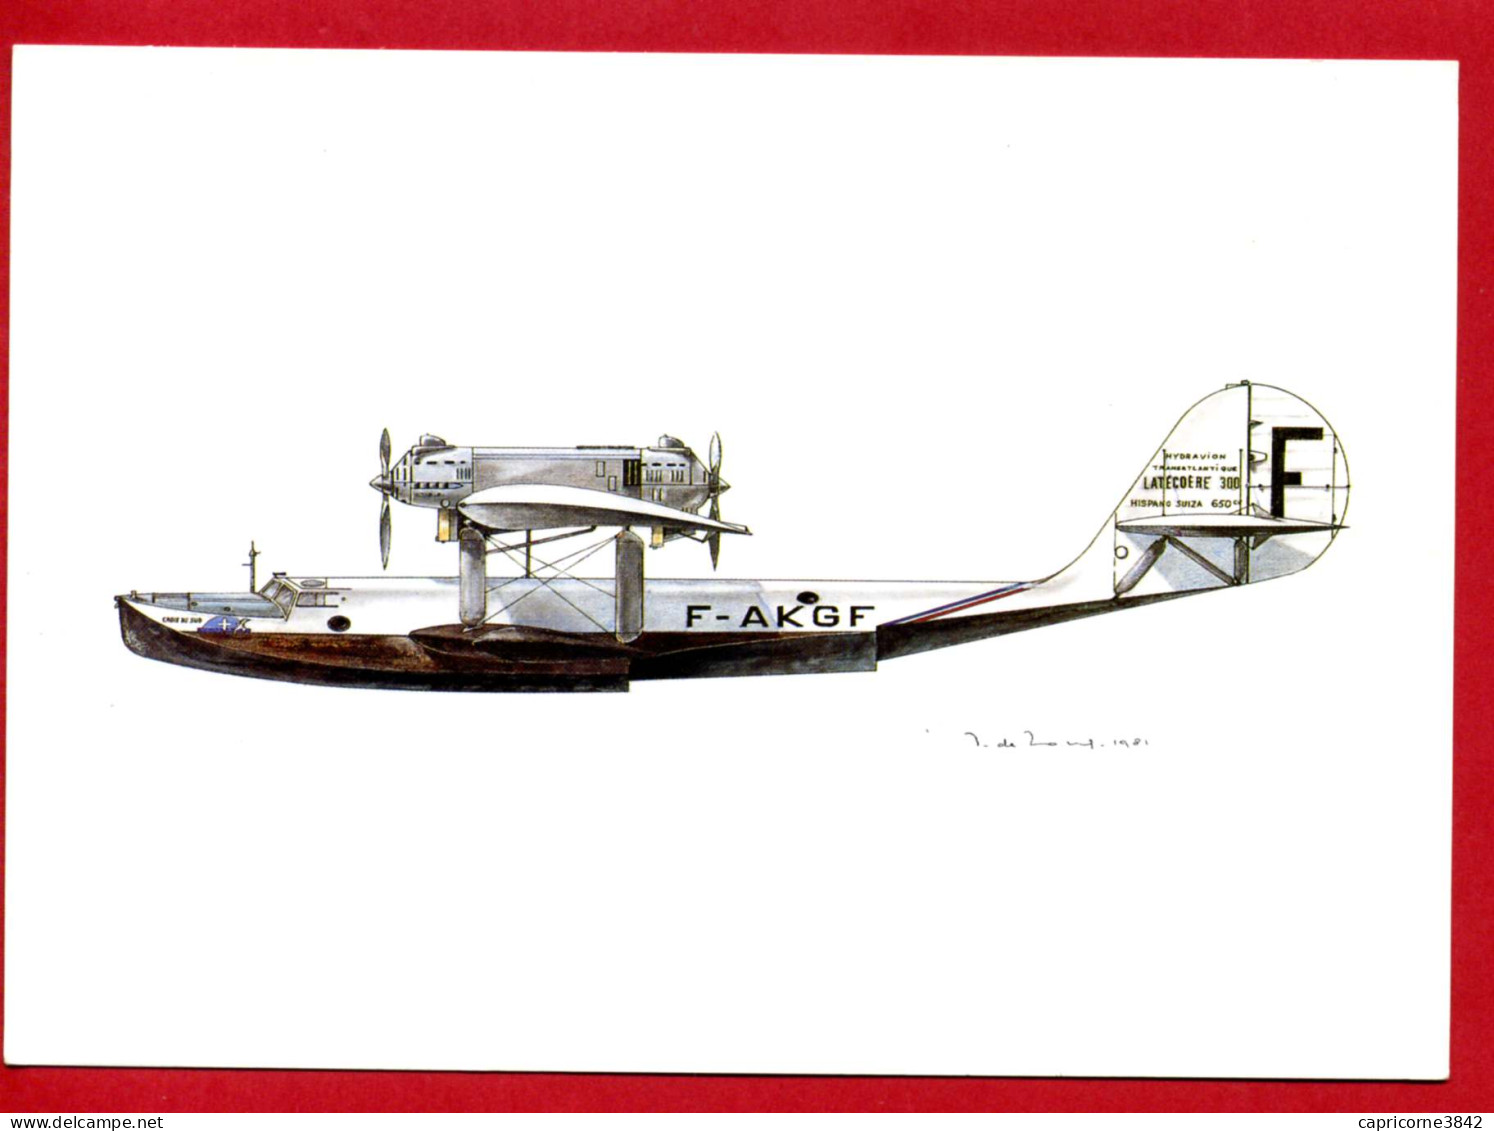 Carte Postale Du Musée De La Poste - Hydravion Transatlantique LATECOERE 300 - Moteur Hispano Suiza - CROIX DU SUD  - Airplanes